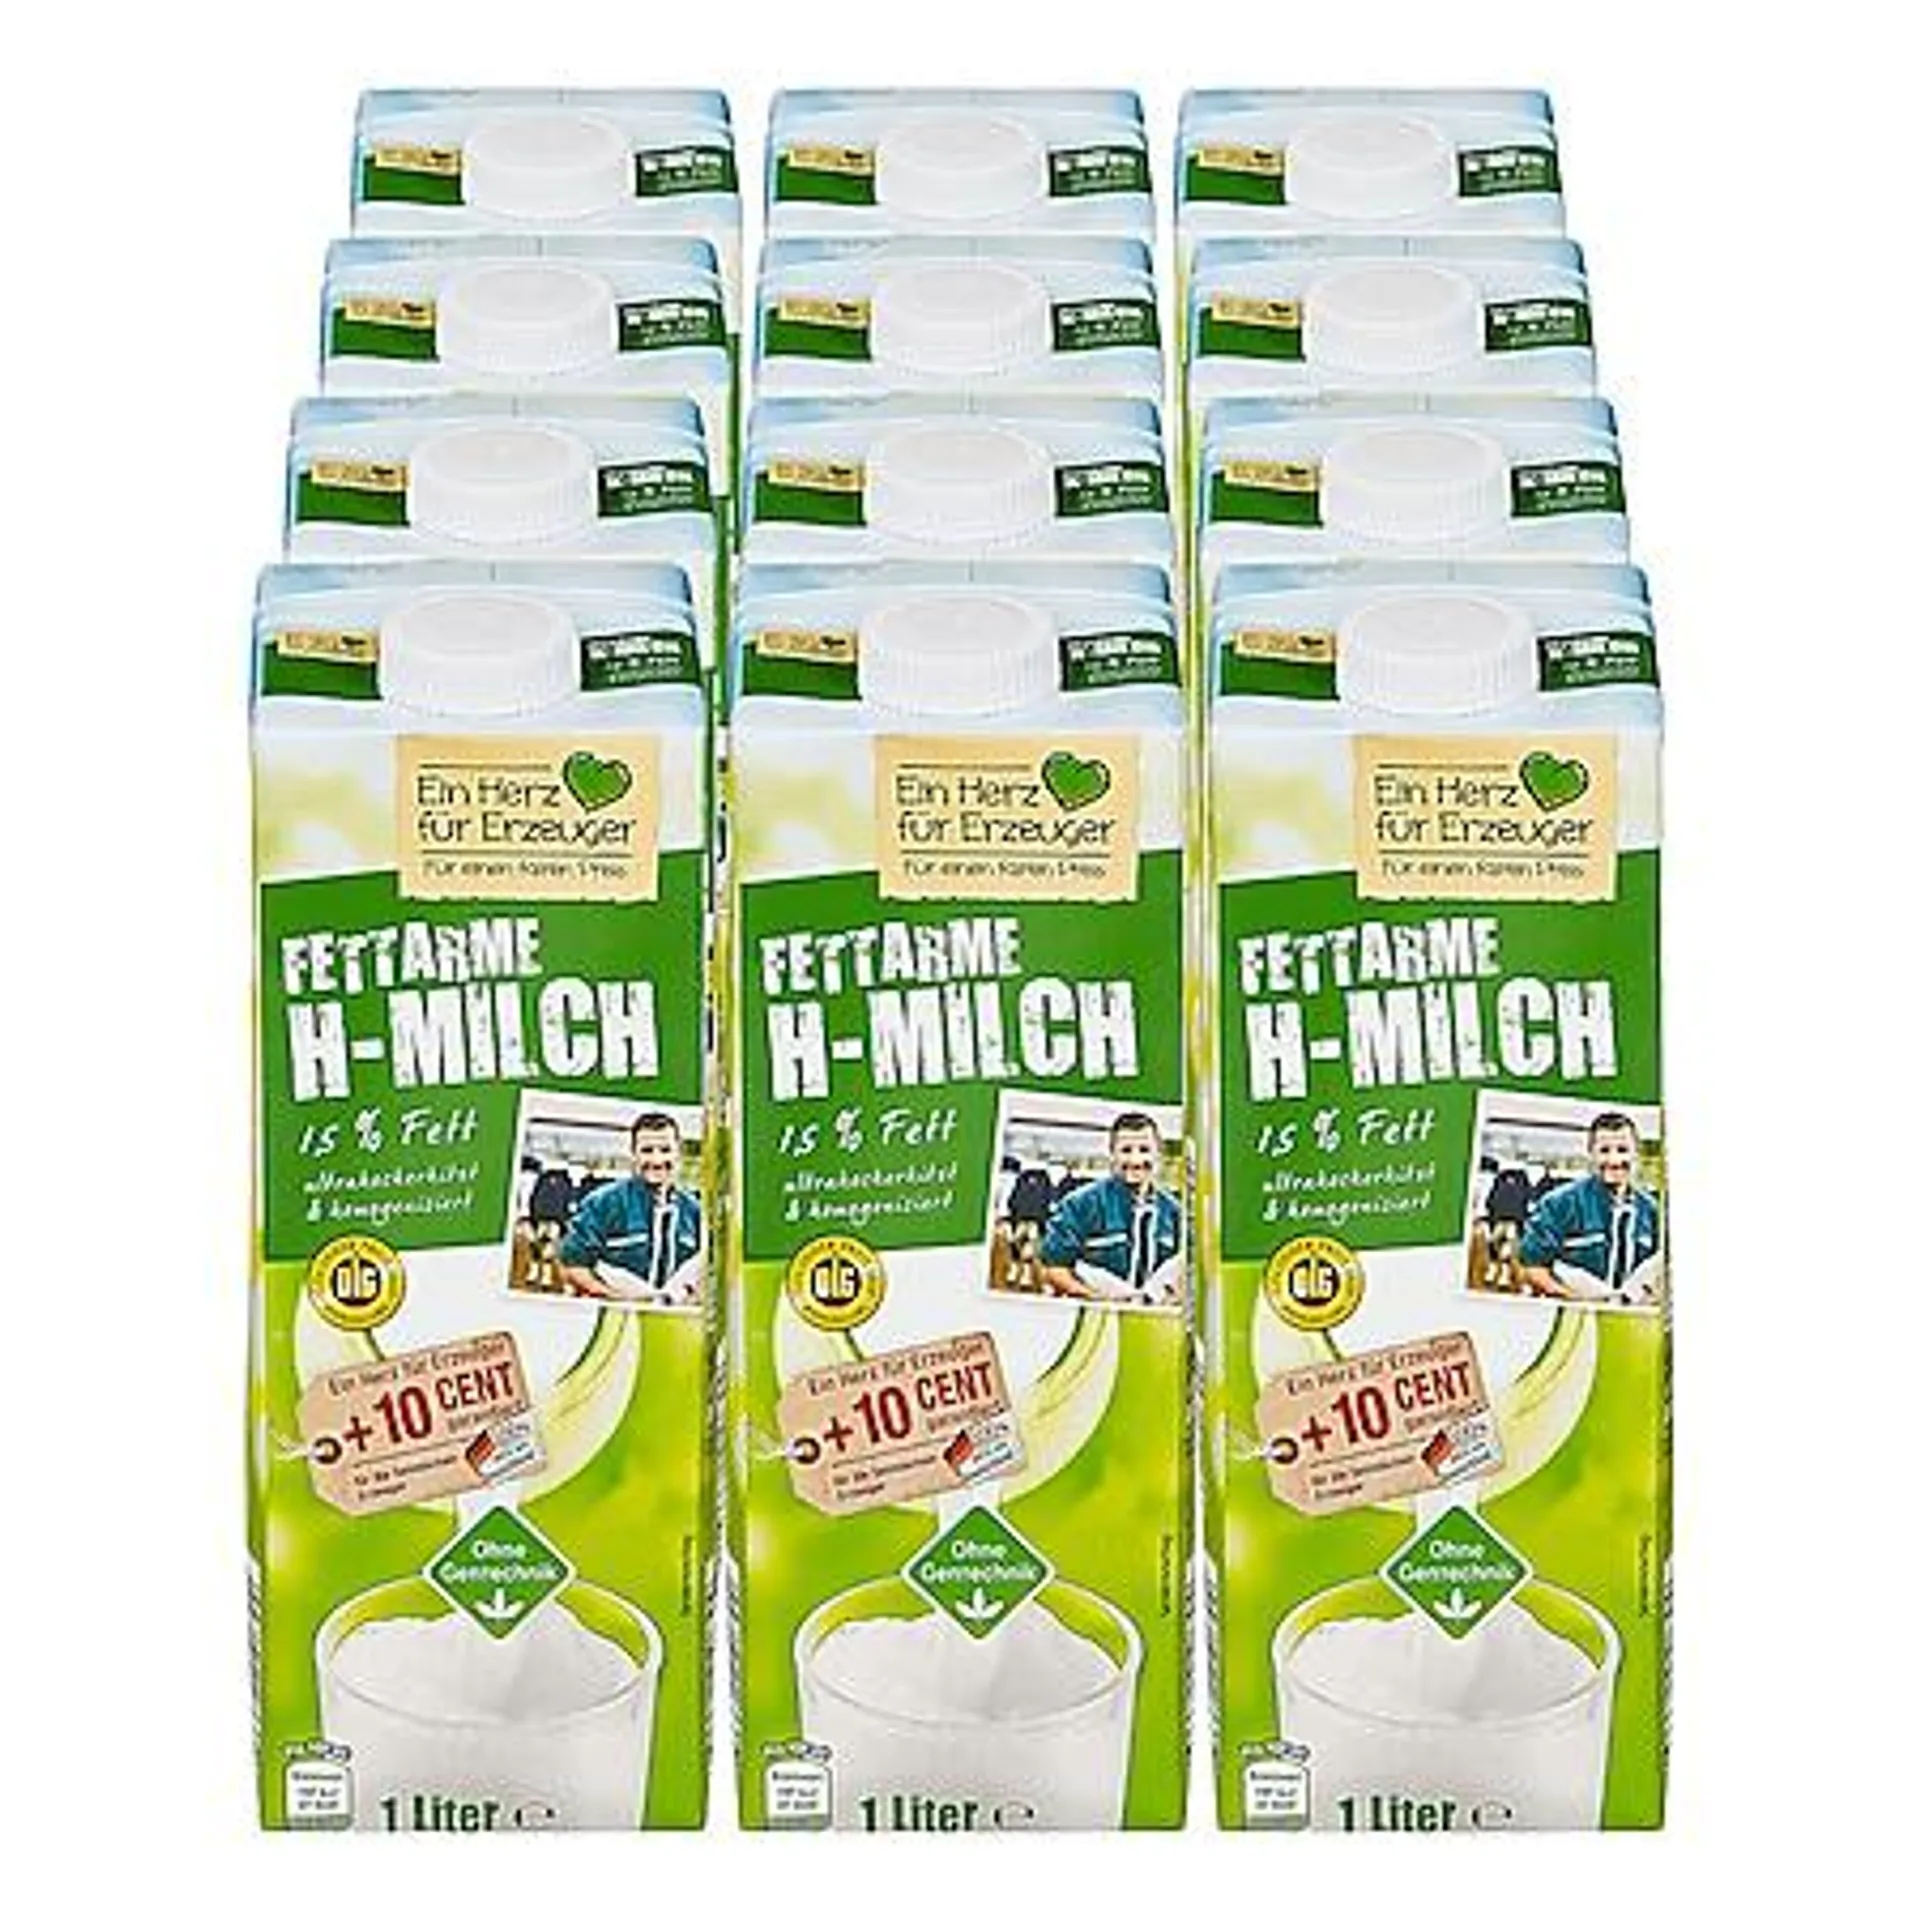 Ein Herz für Erzeuger H-Milch 1,5% 1 Liter, 12er Pack